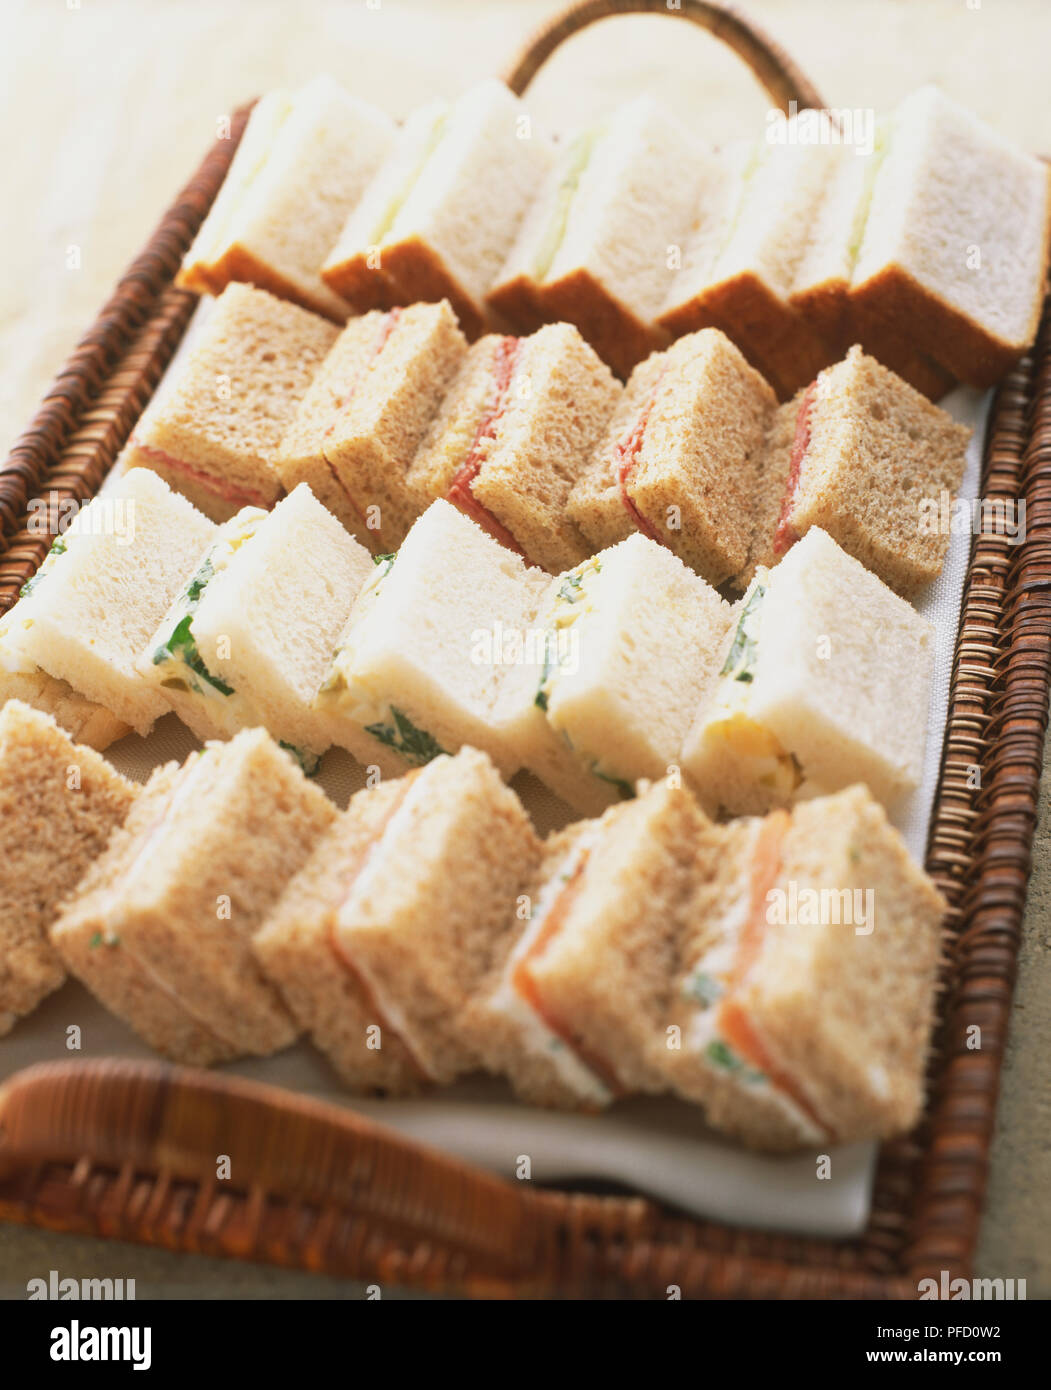 Sandwiches, weiche, weiße und braune Brot, mit verschiedenen Füllungen, auf rattan Fach dienen arrangiert, in der Nähe Stockfoto